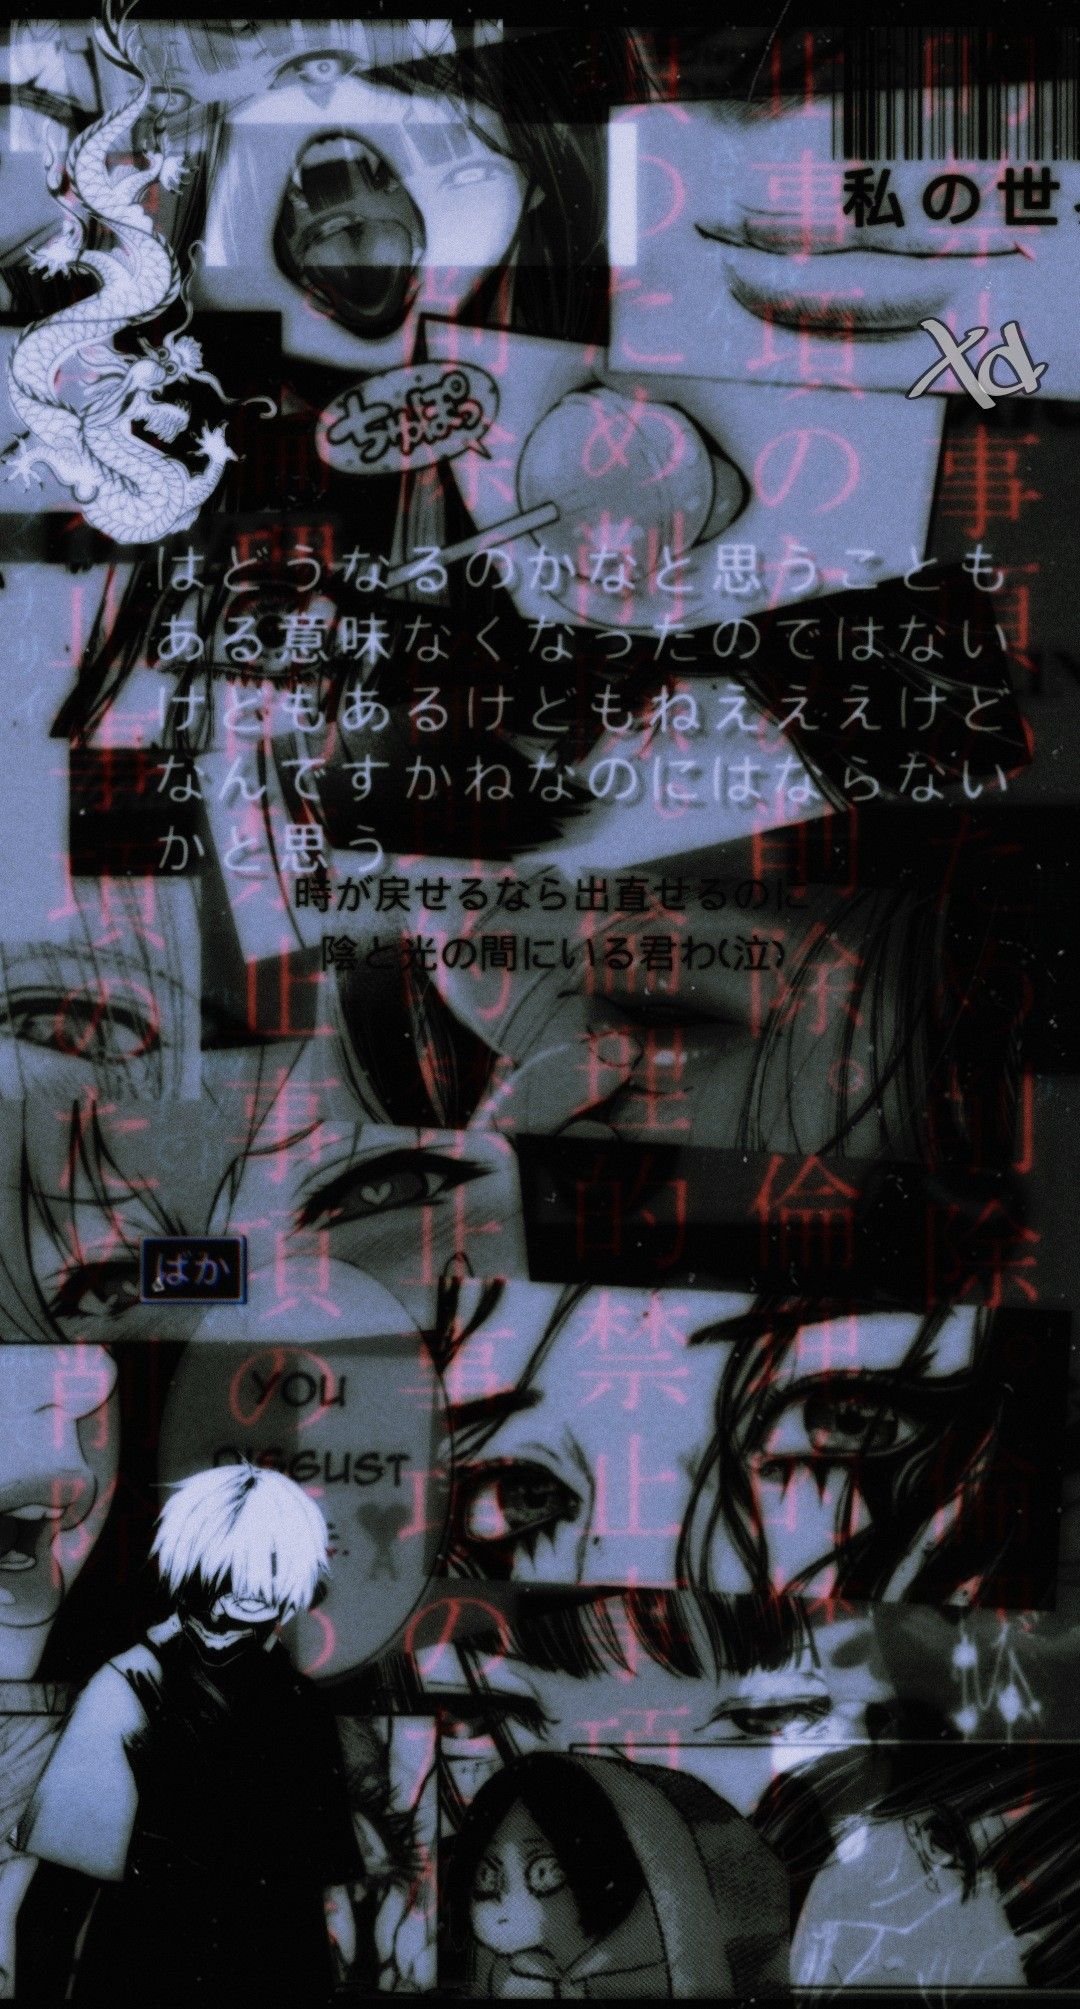 Anime Aesthetic Wallpaper